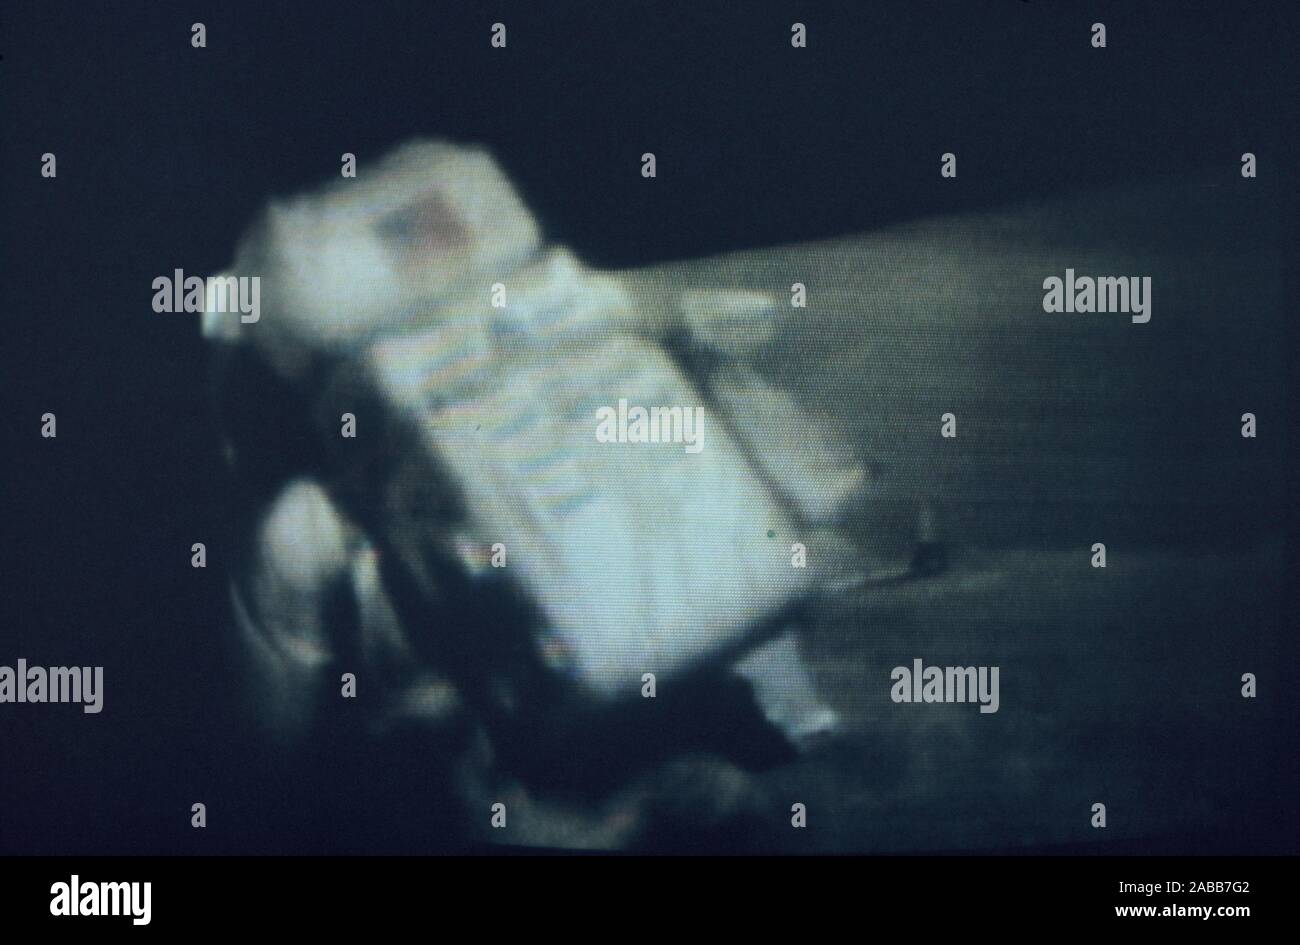 Teleclip - Buzz Aldrin trébuchant sur la surface de la lune - photo prise directement sur l'écran du téléviseur vers 1969-1972 Banque D'Images